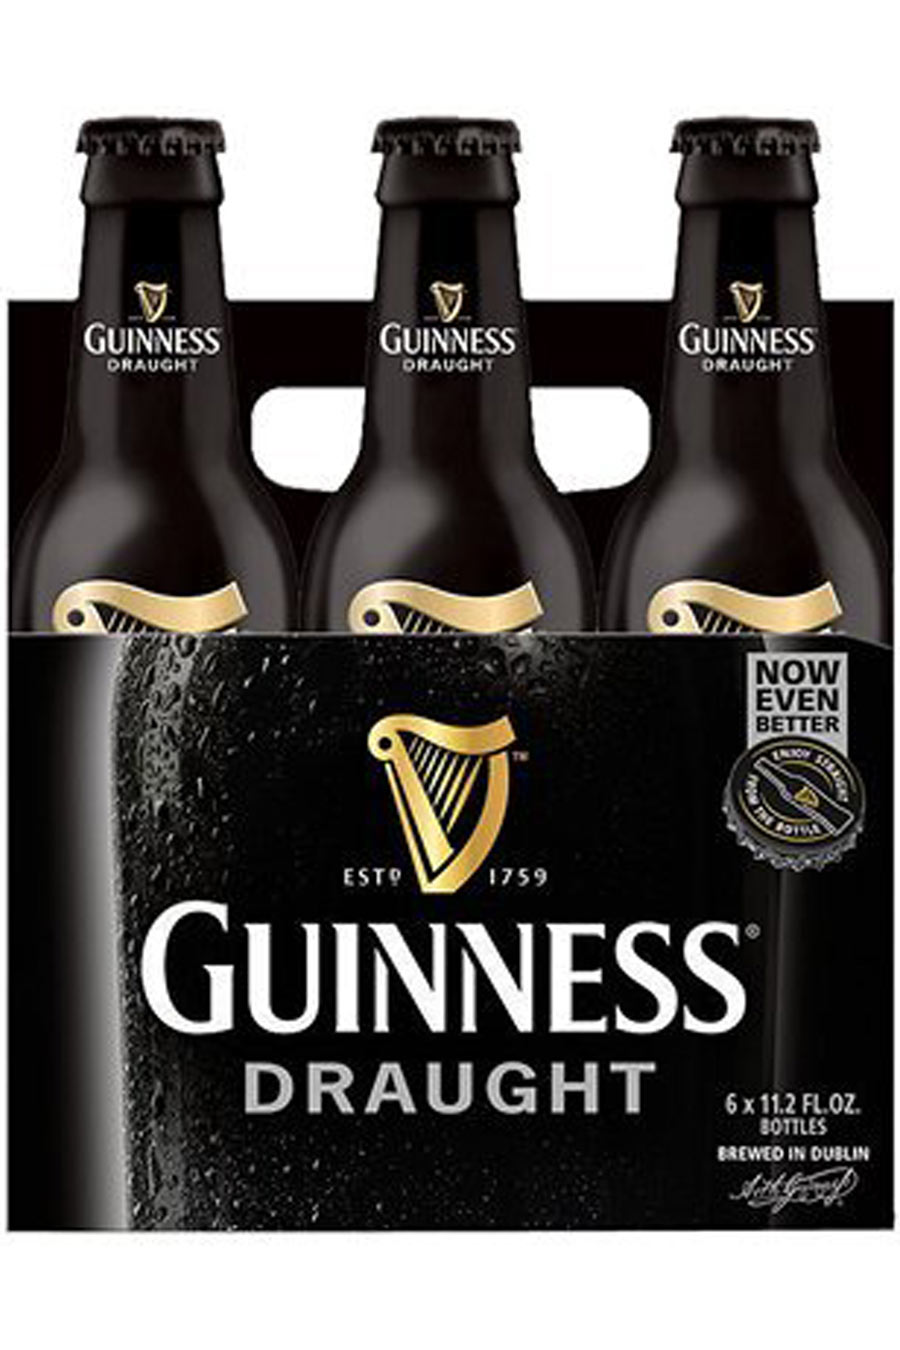 Guinness Draught 6pack cold bottles